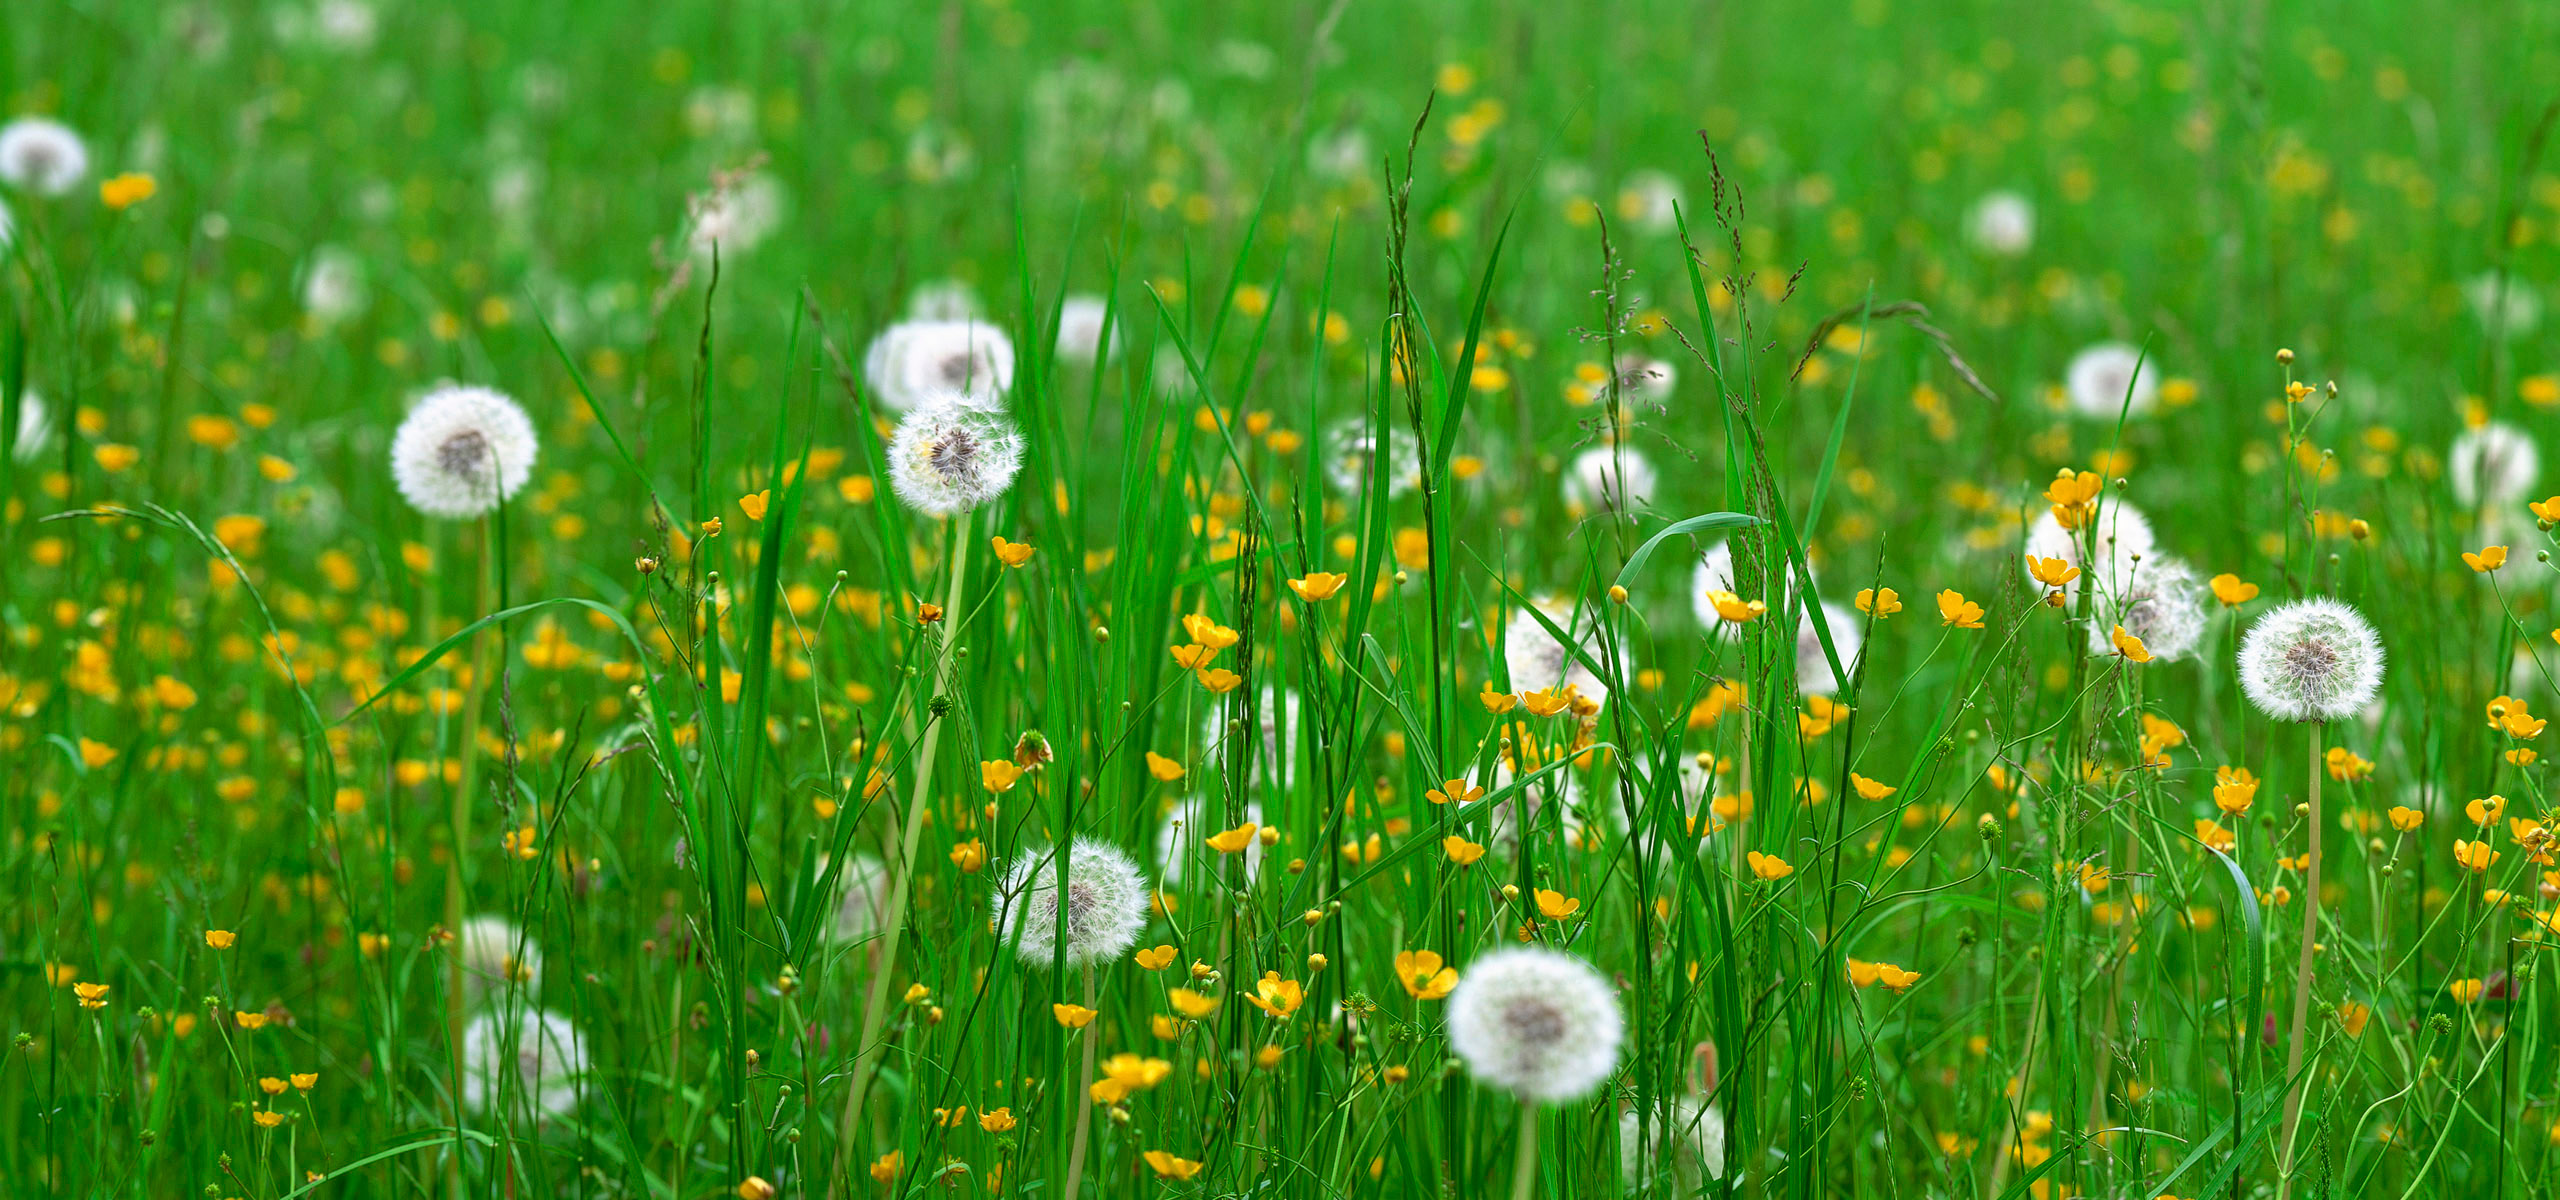 quad hd обои, зелень, трава, одуванчик, полевые цветы, природа, яркие обои для iPhone